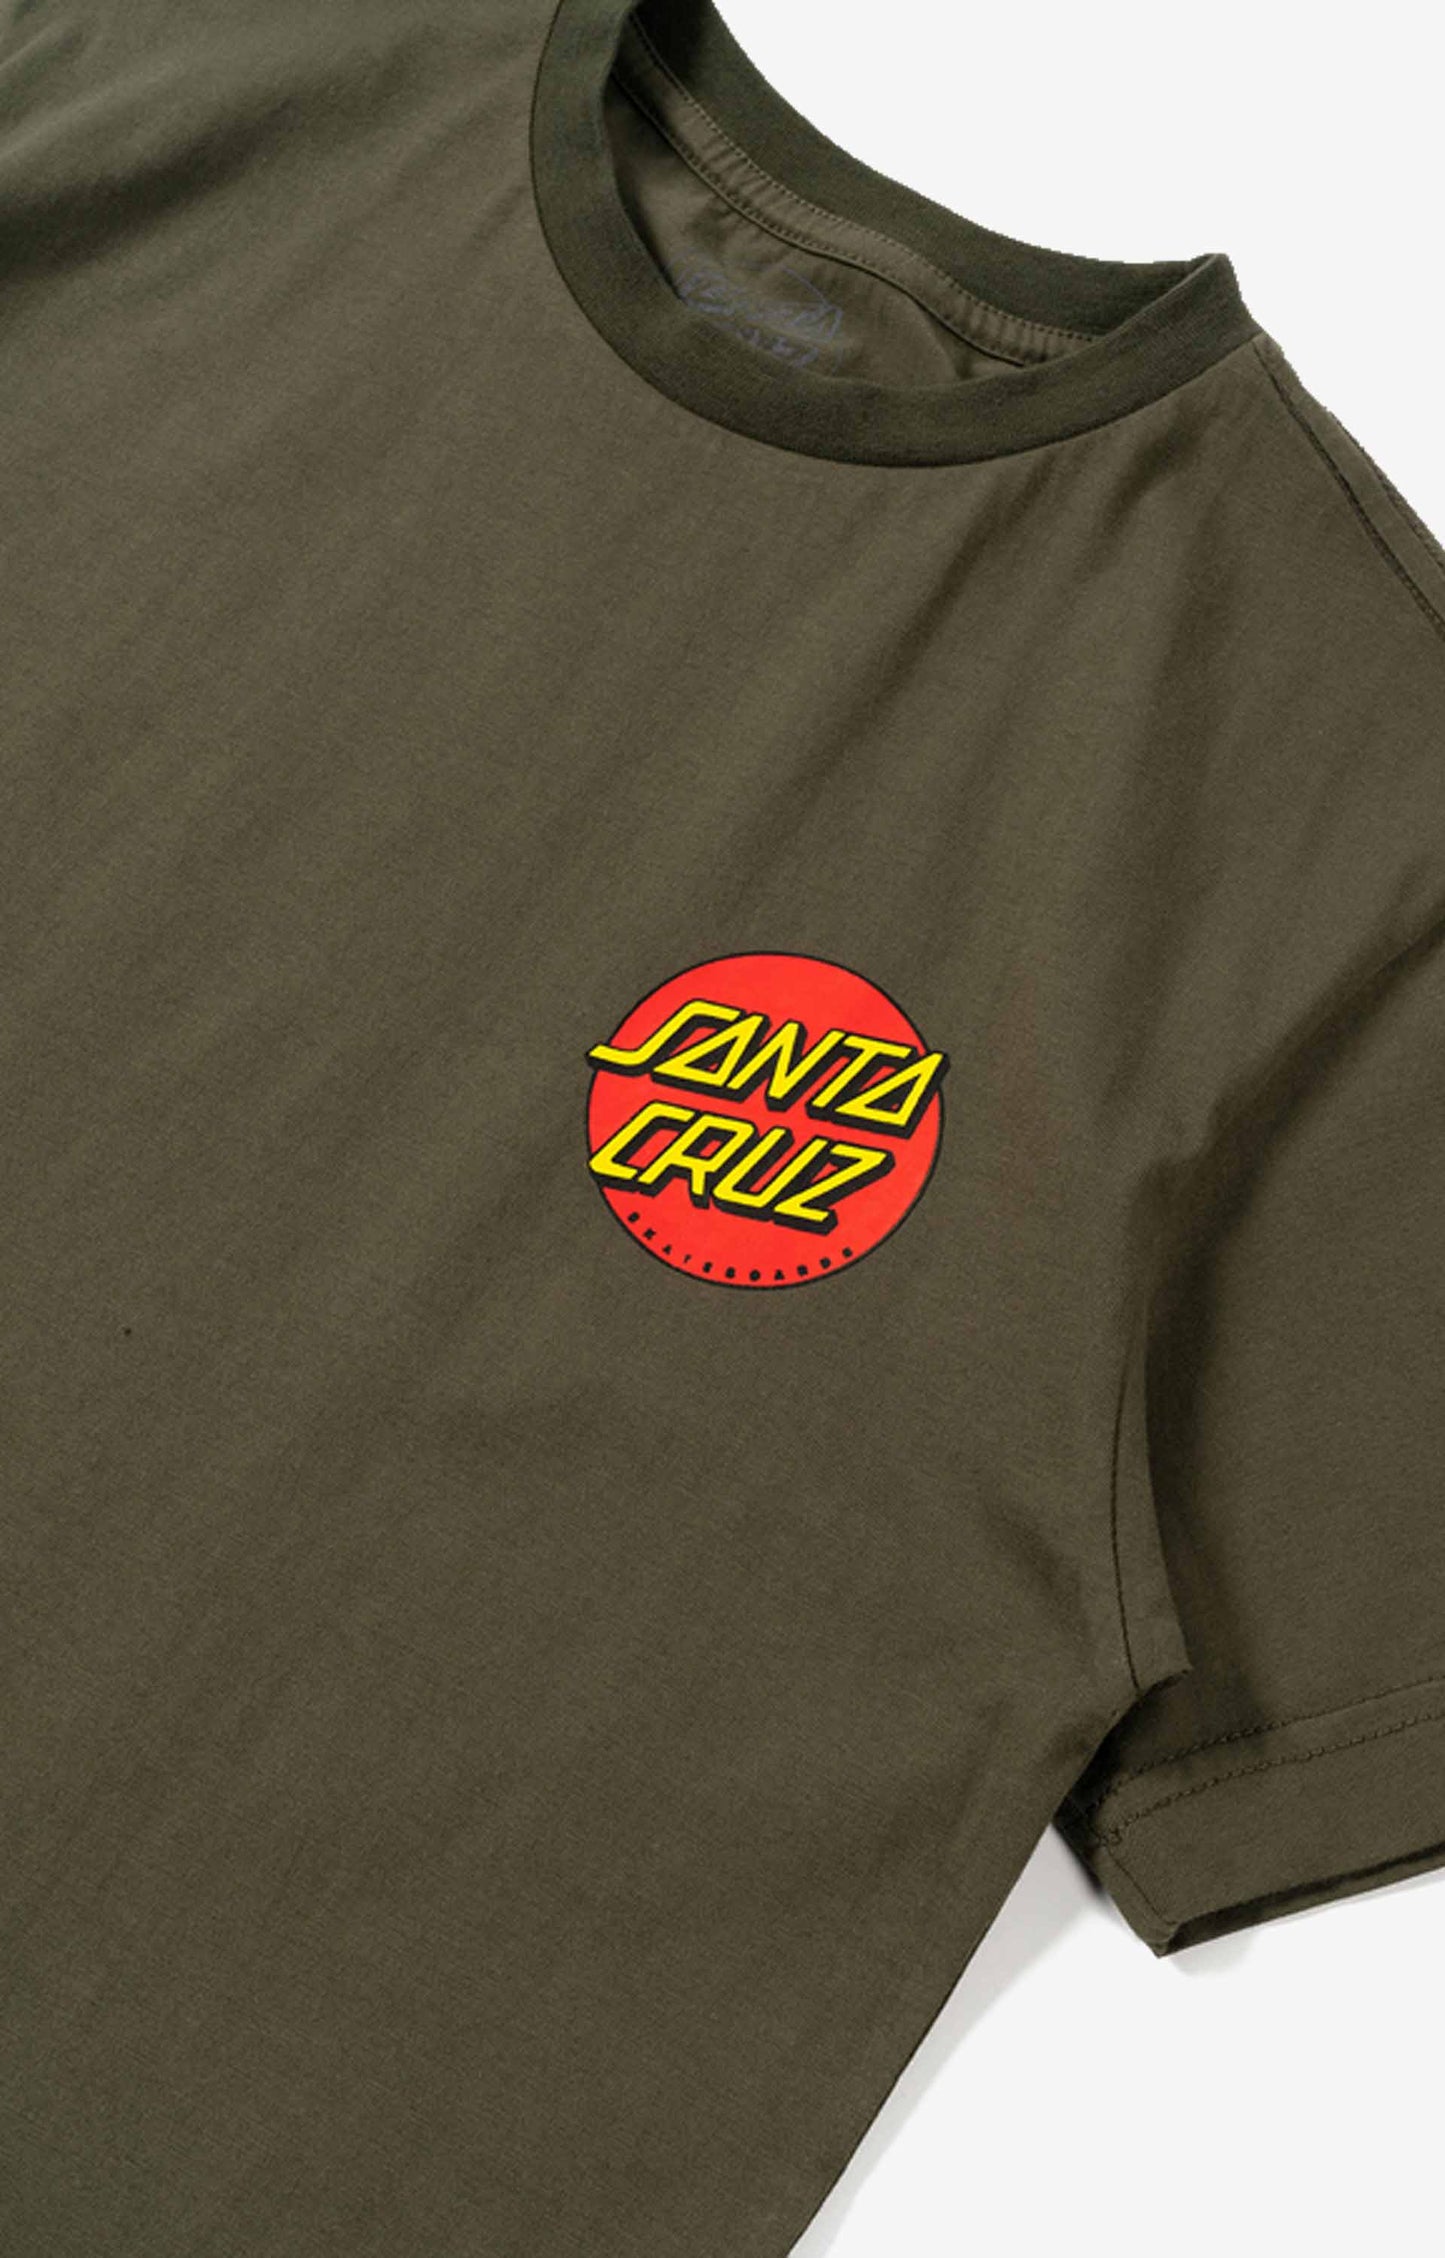 Santa Cruz Classic Dot Youth T-Shirt, Dark Olive